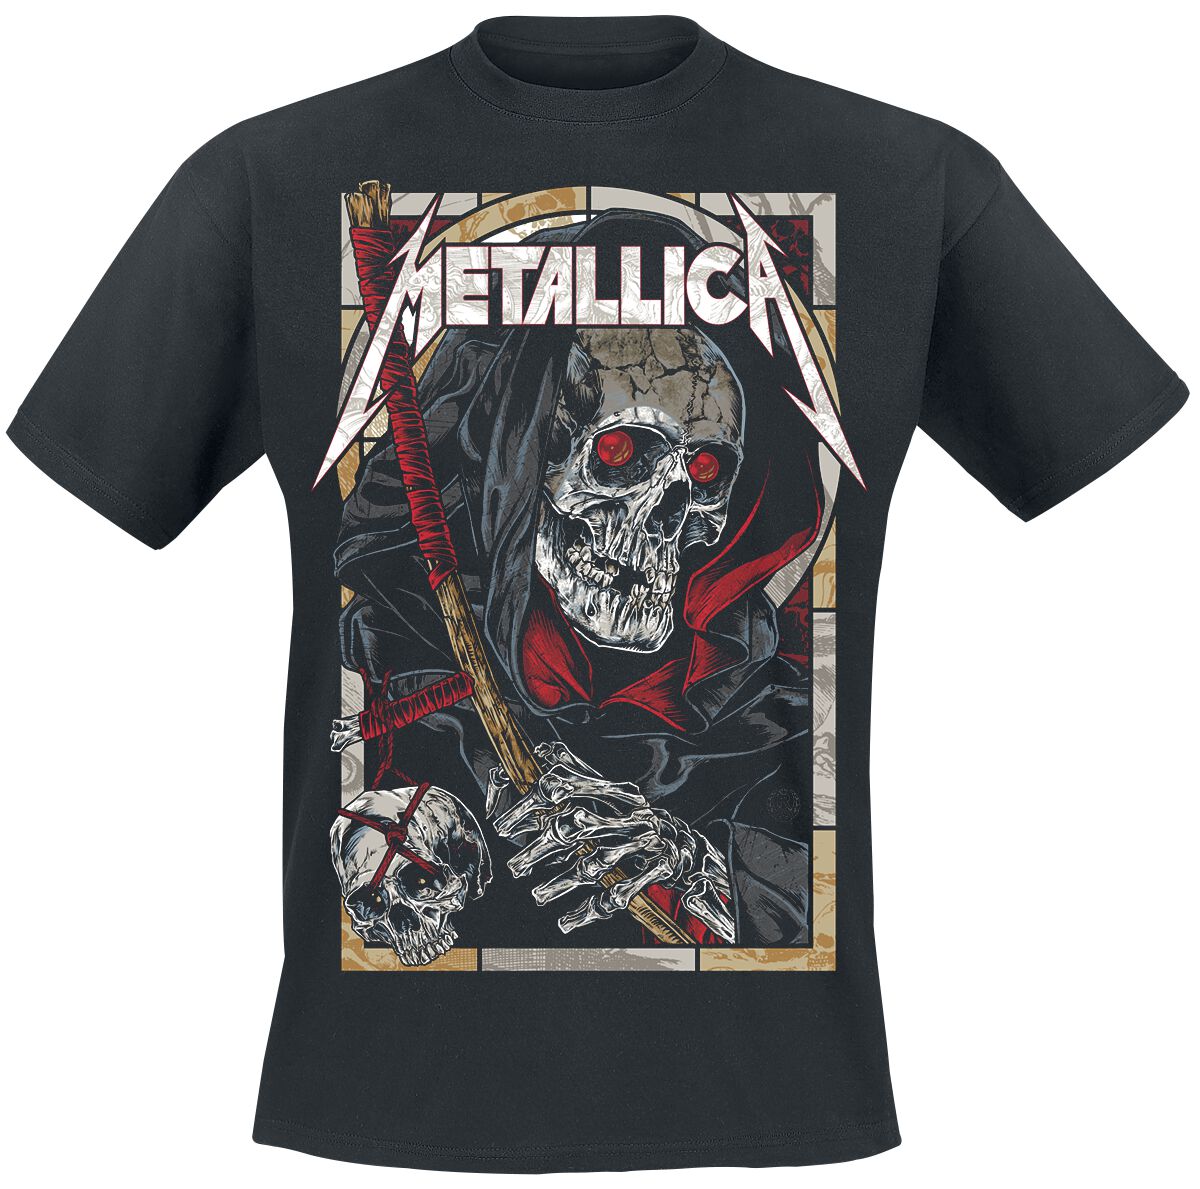 Metallica T-Shirt - Death Reaper - S bis 5XL - für Männer - Größe S - schwarz  - Lizenziertes Merchandise!